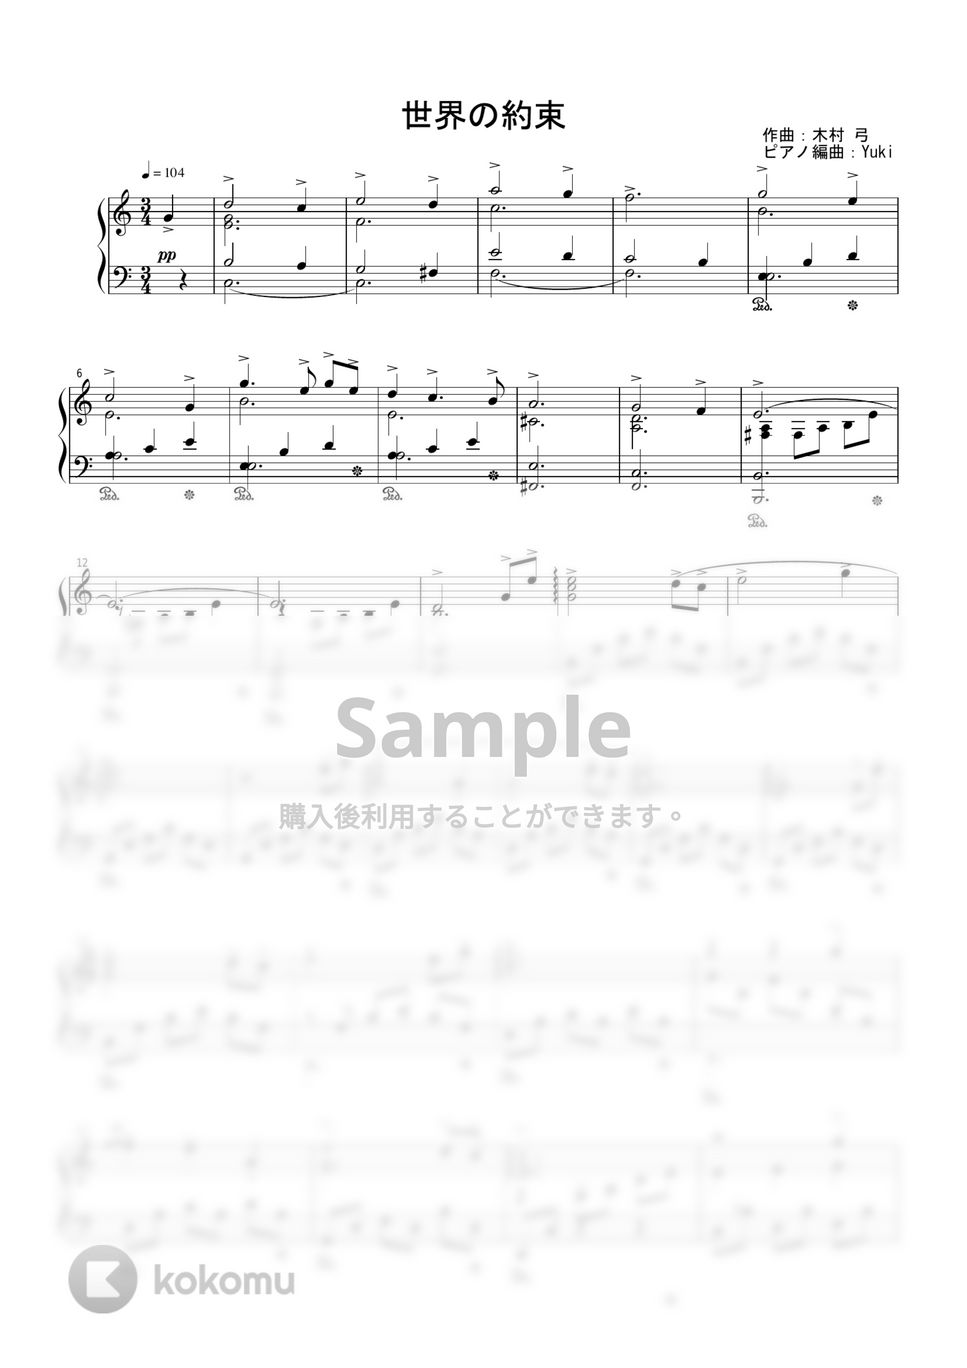 倍賞千恵子 - 世界の約束 by Yuki＠ピアノの先生